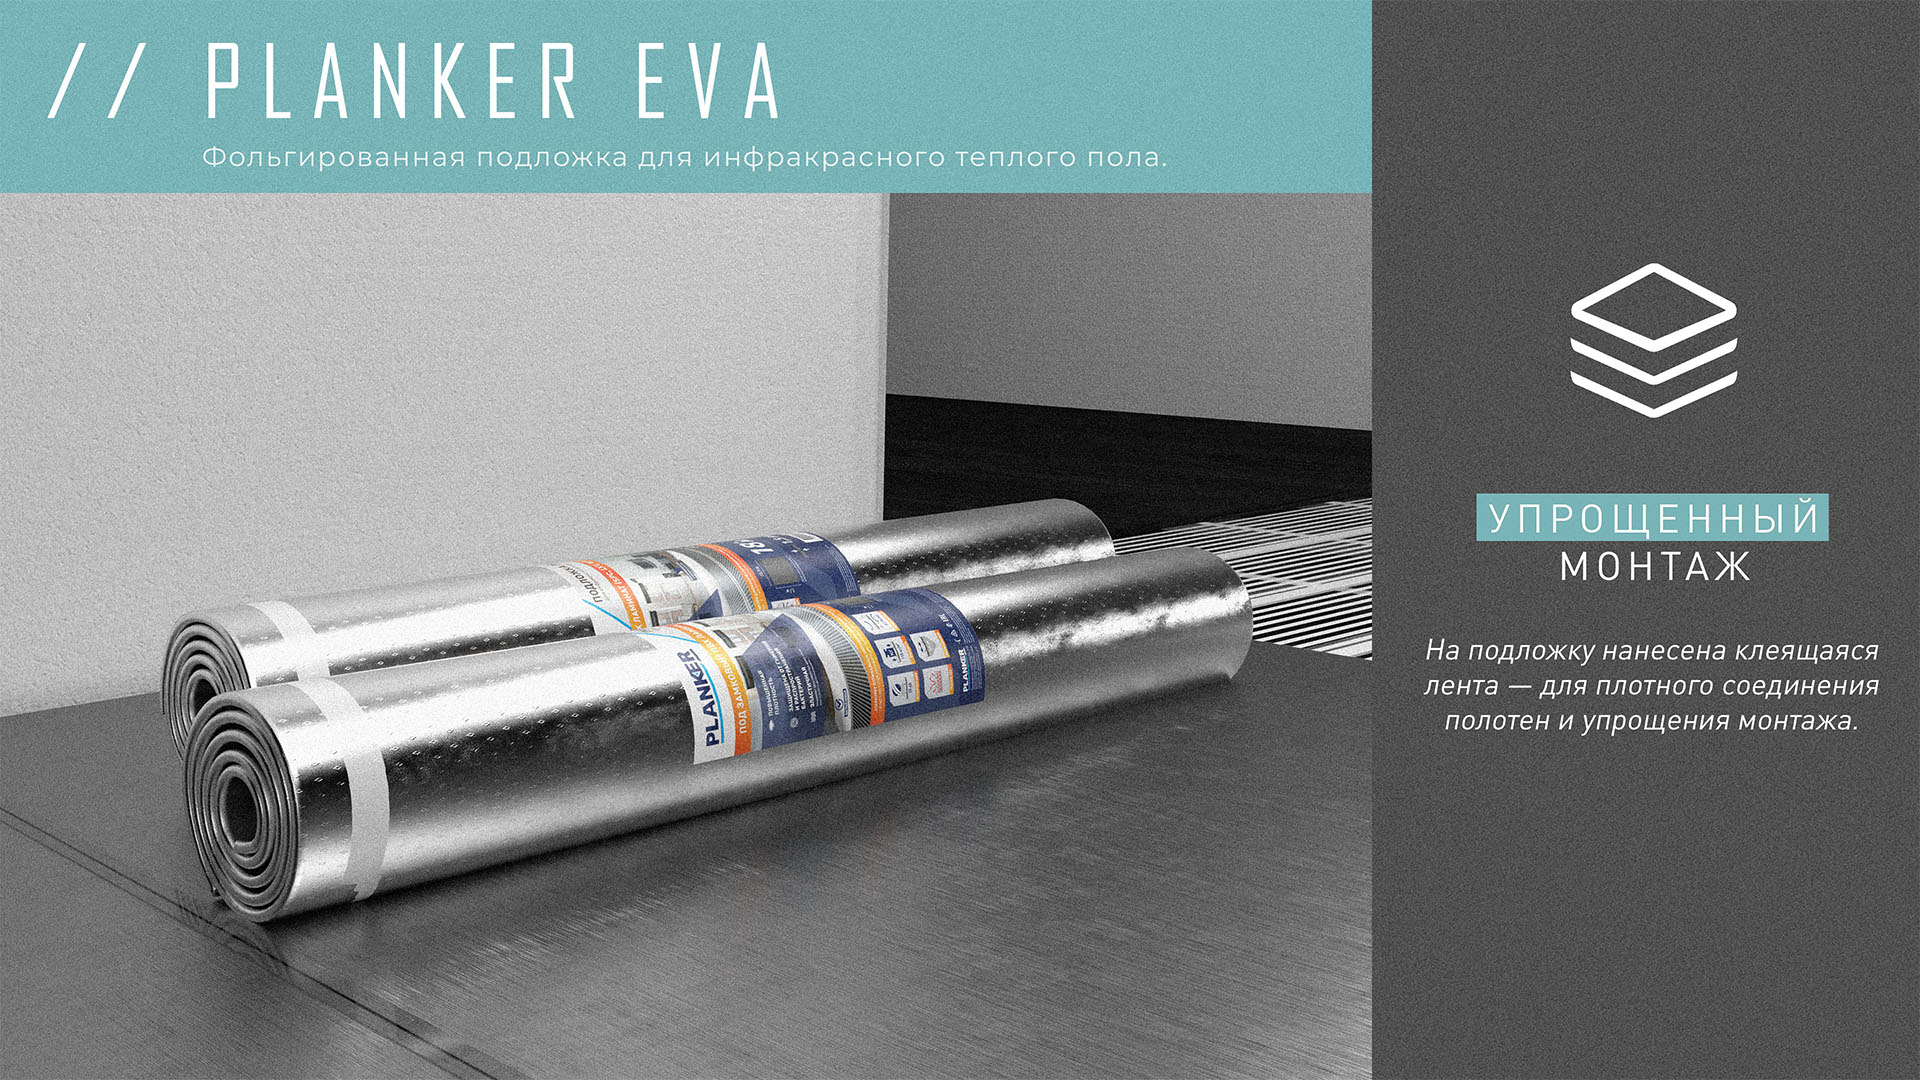 Planker подложка 1.5 мм Eva. Огромный рулон фольги. Подложка planker Eva для инфракрасного теплого. Пирамида рулонов фольги.